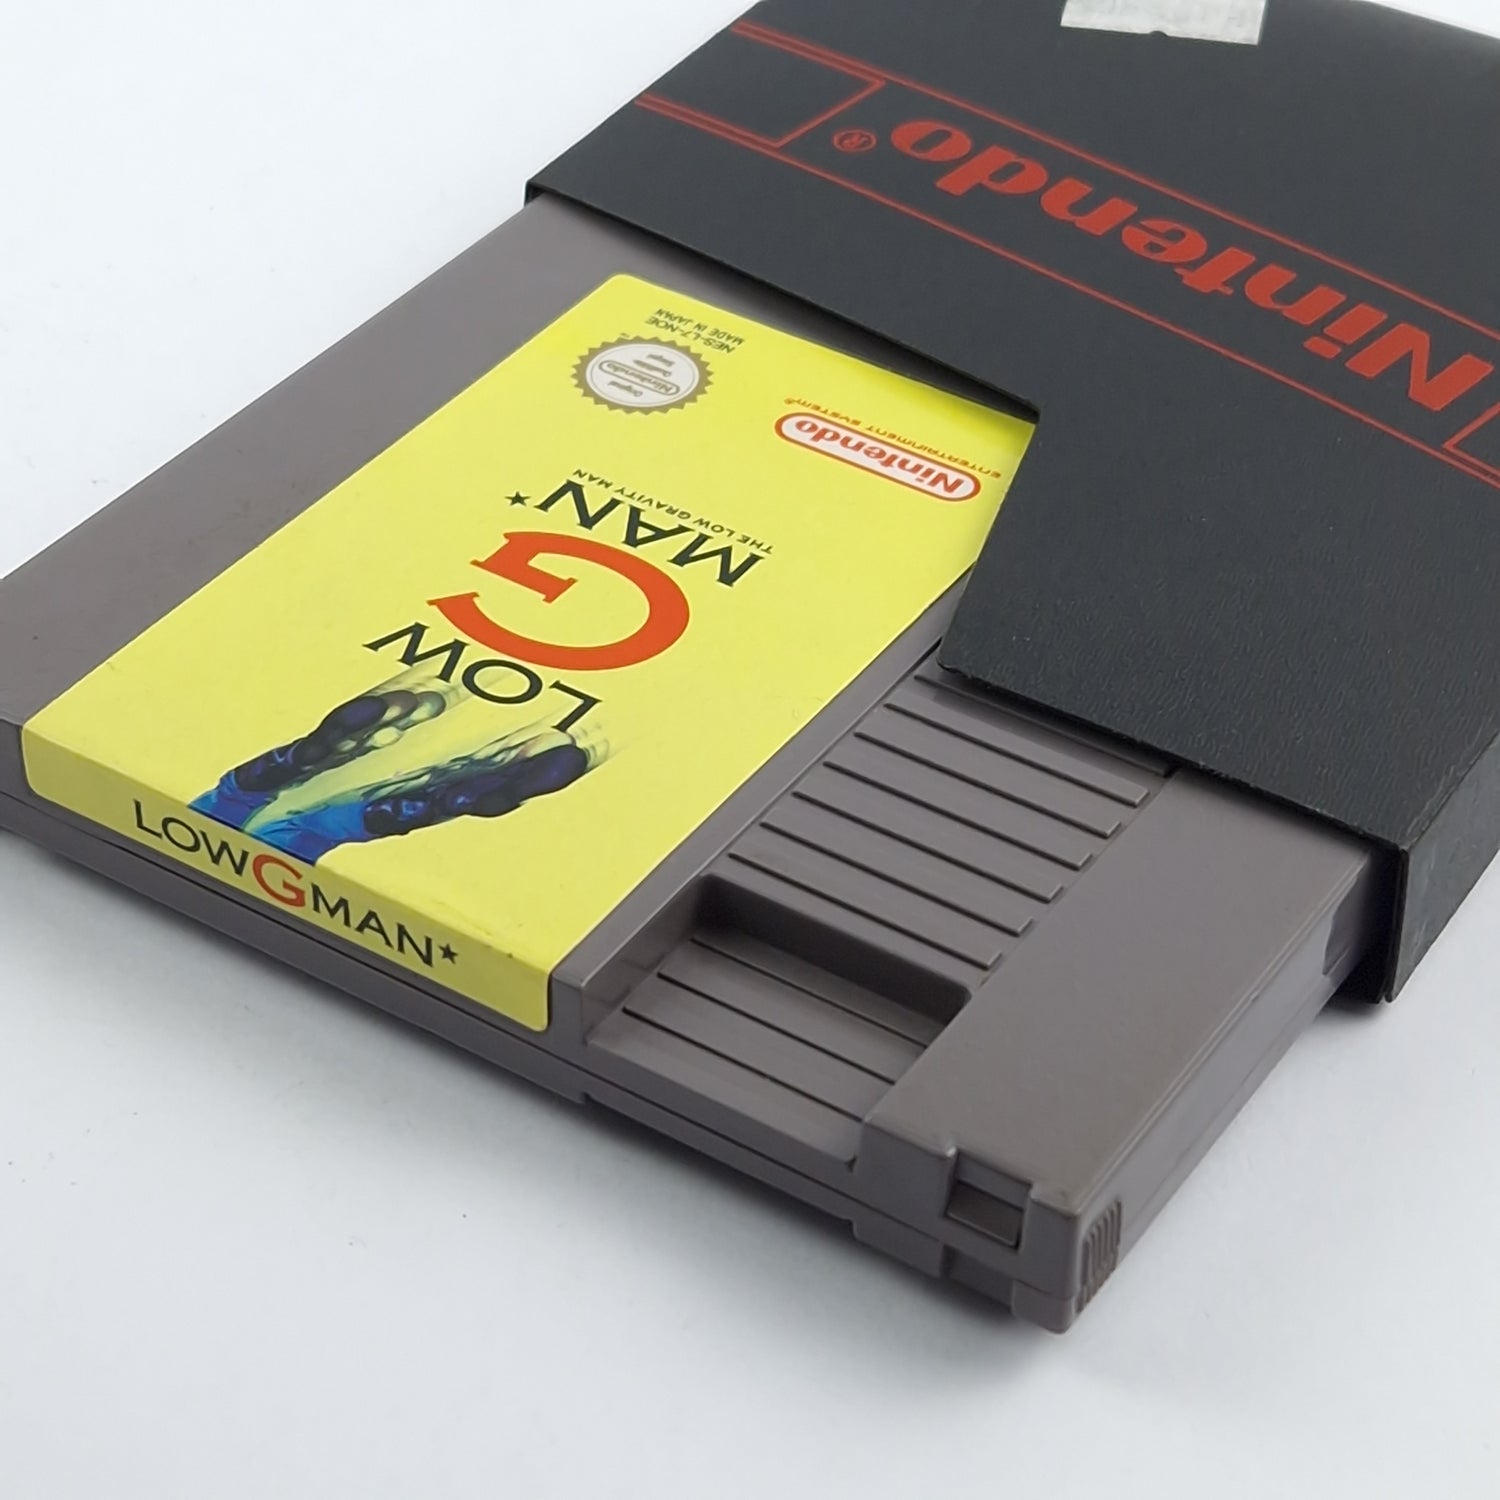 Nintendo NES Spiel : Low G Man - Modul Cartridge (Sehr gut) / PAL-B NOE